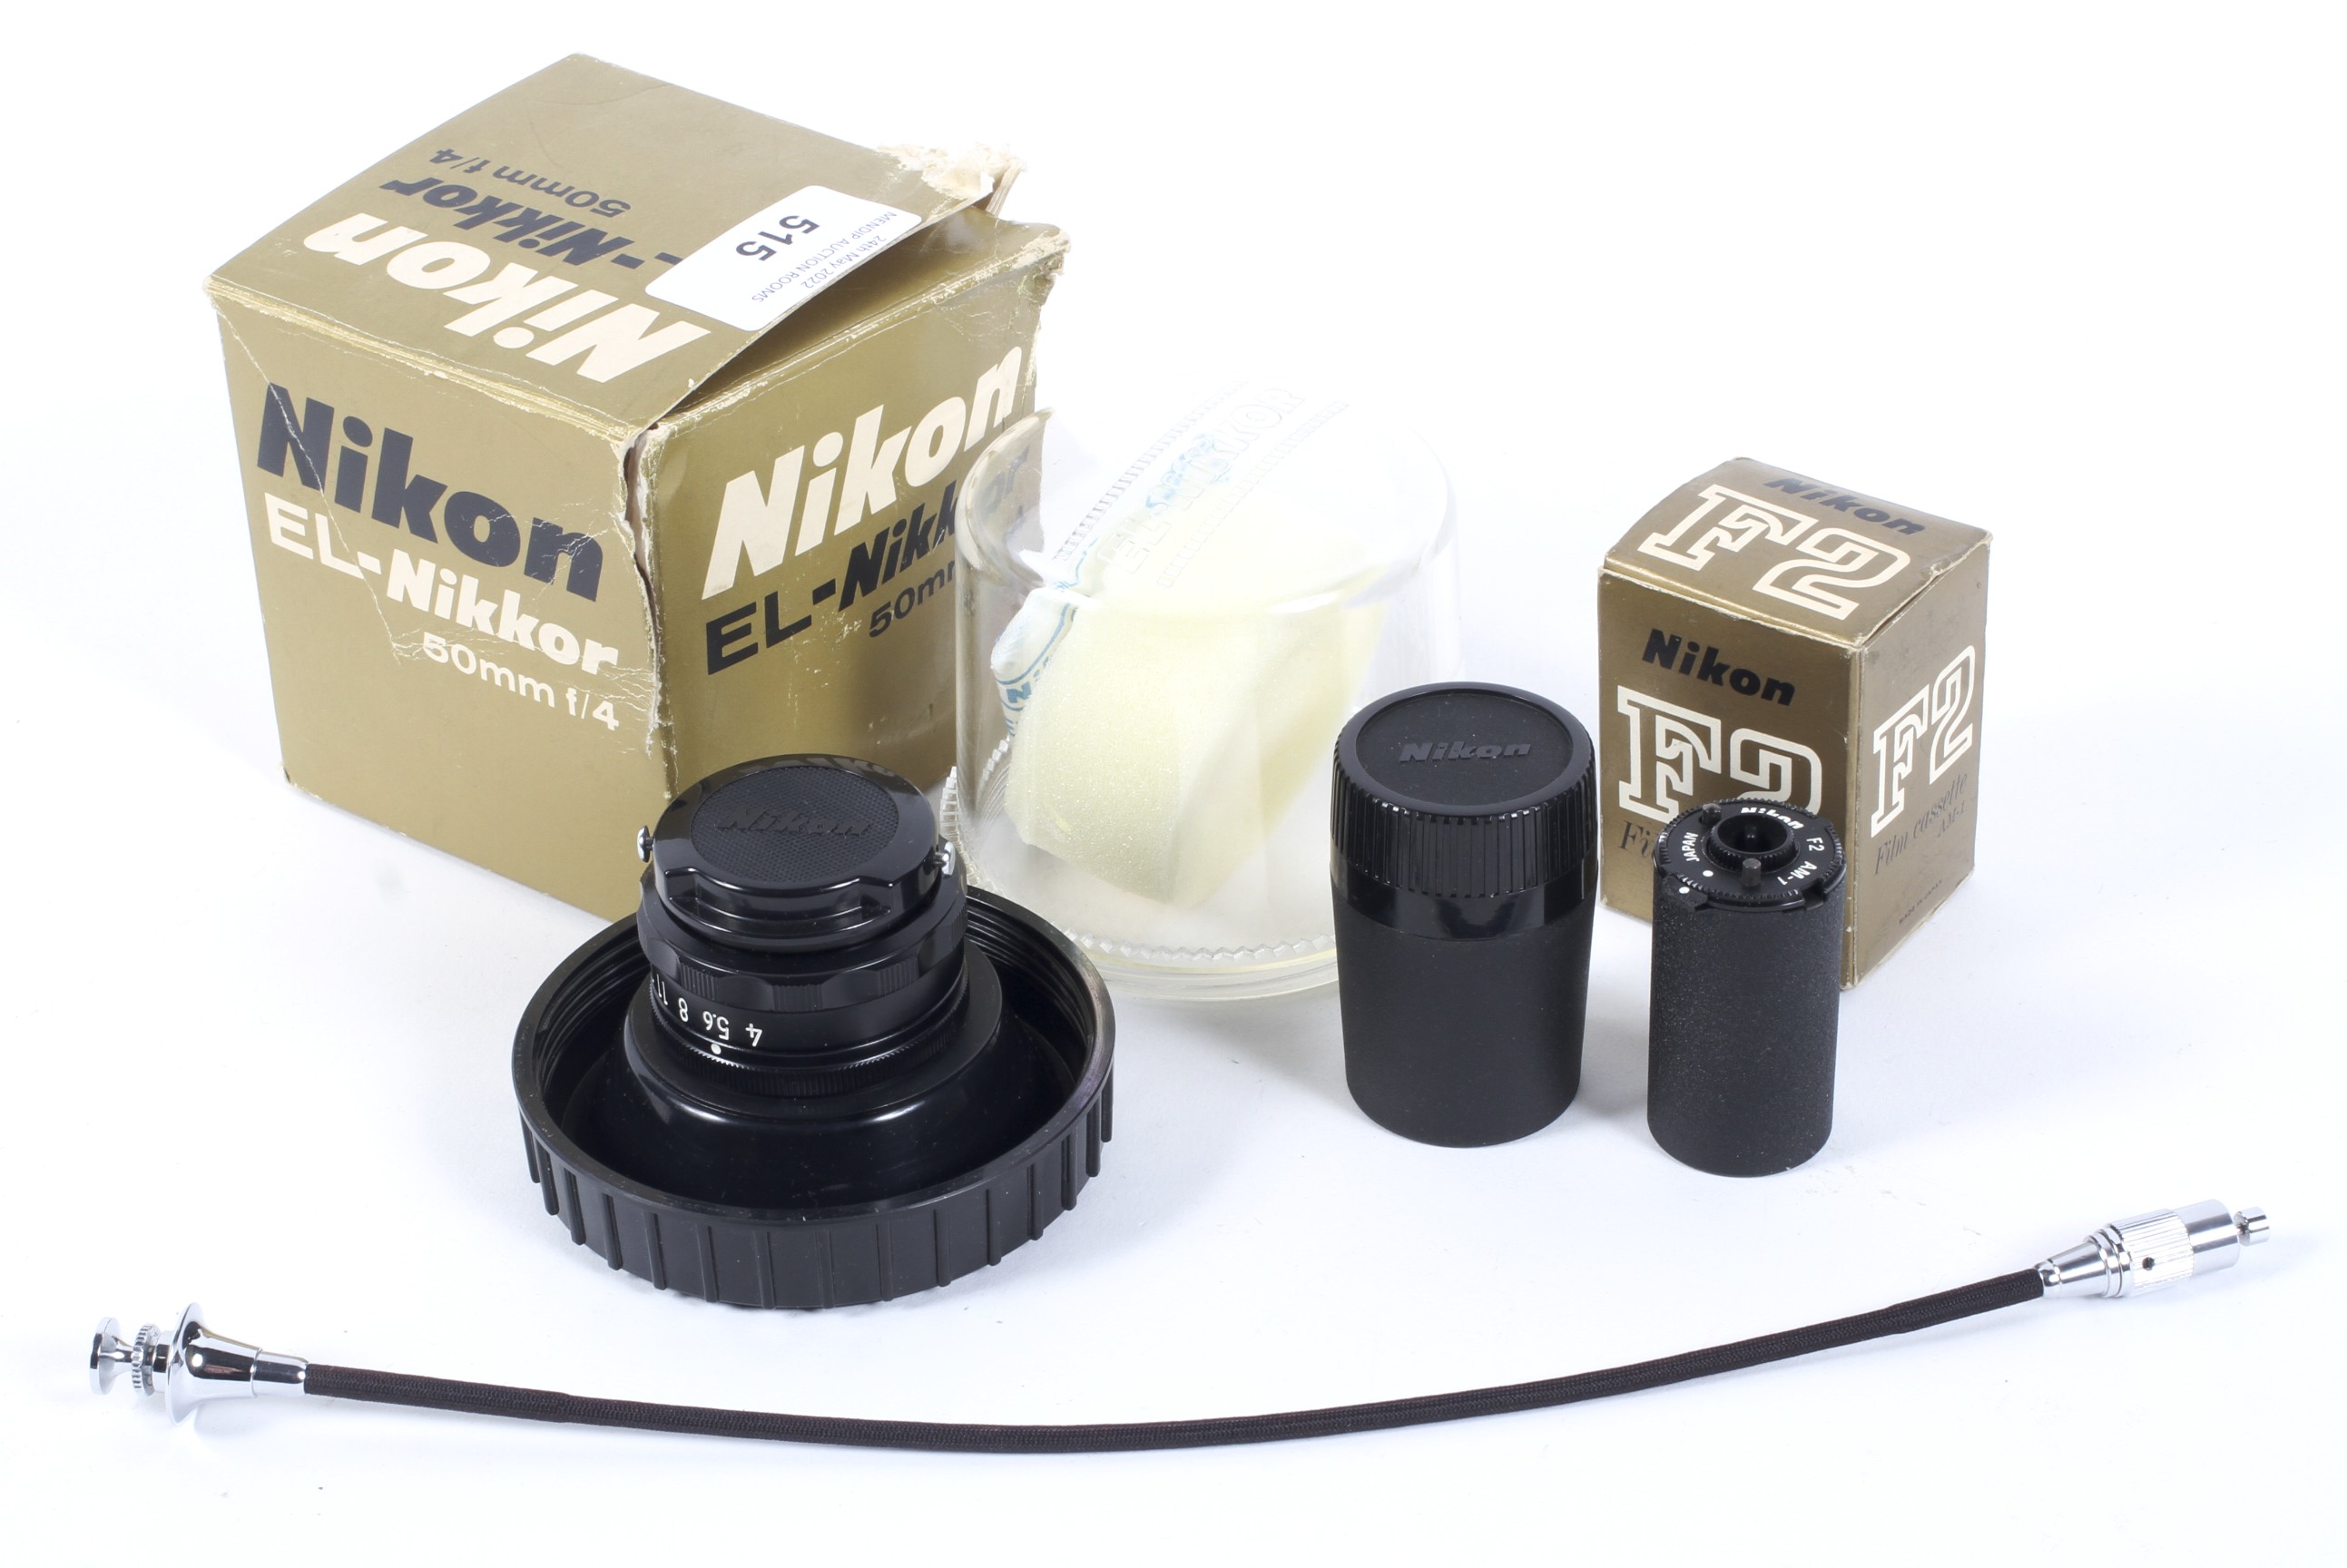 A Nikon EL-Nikkor 50mm f4 enlarger lens and accessories.